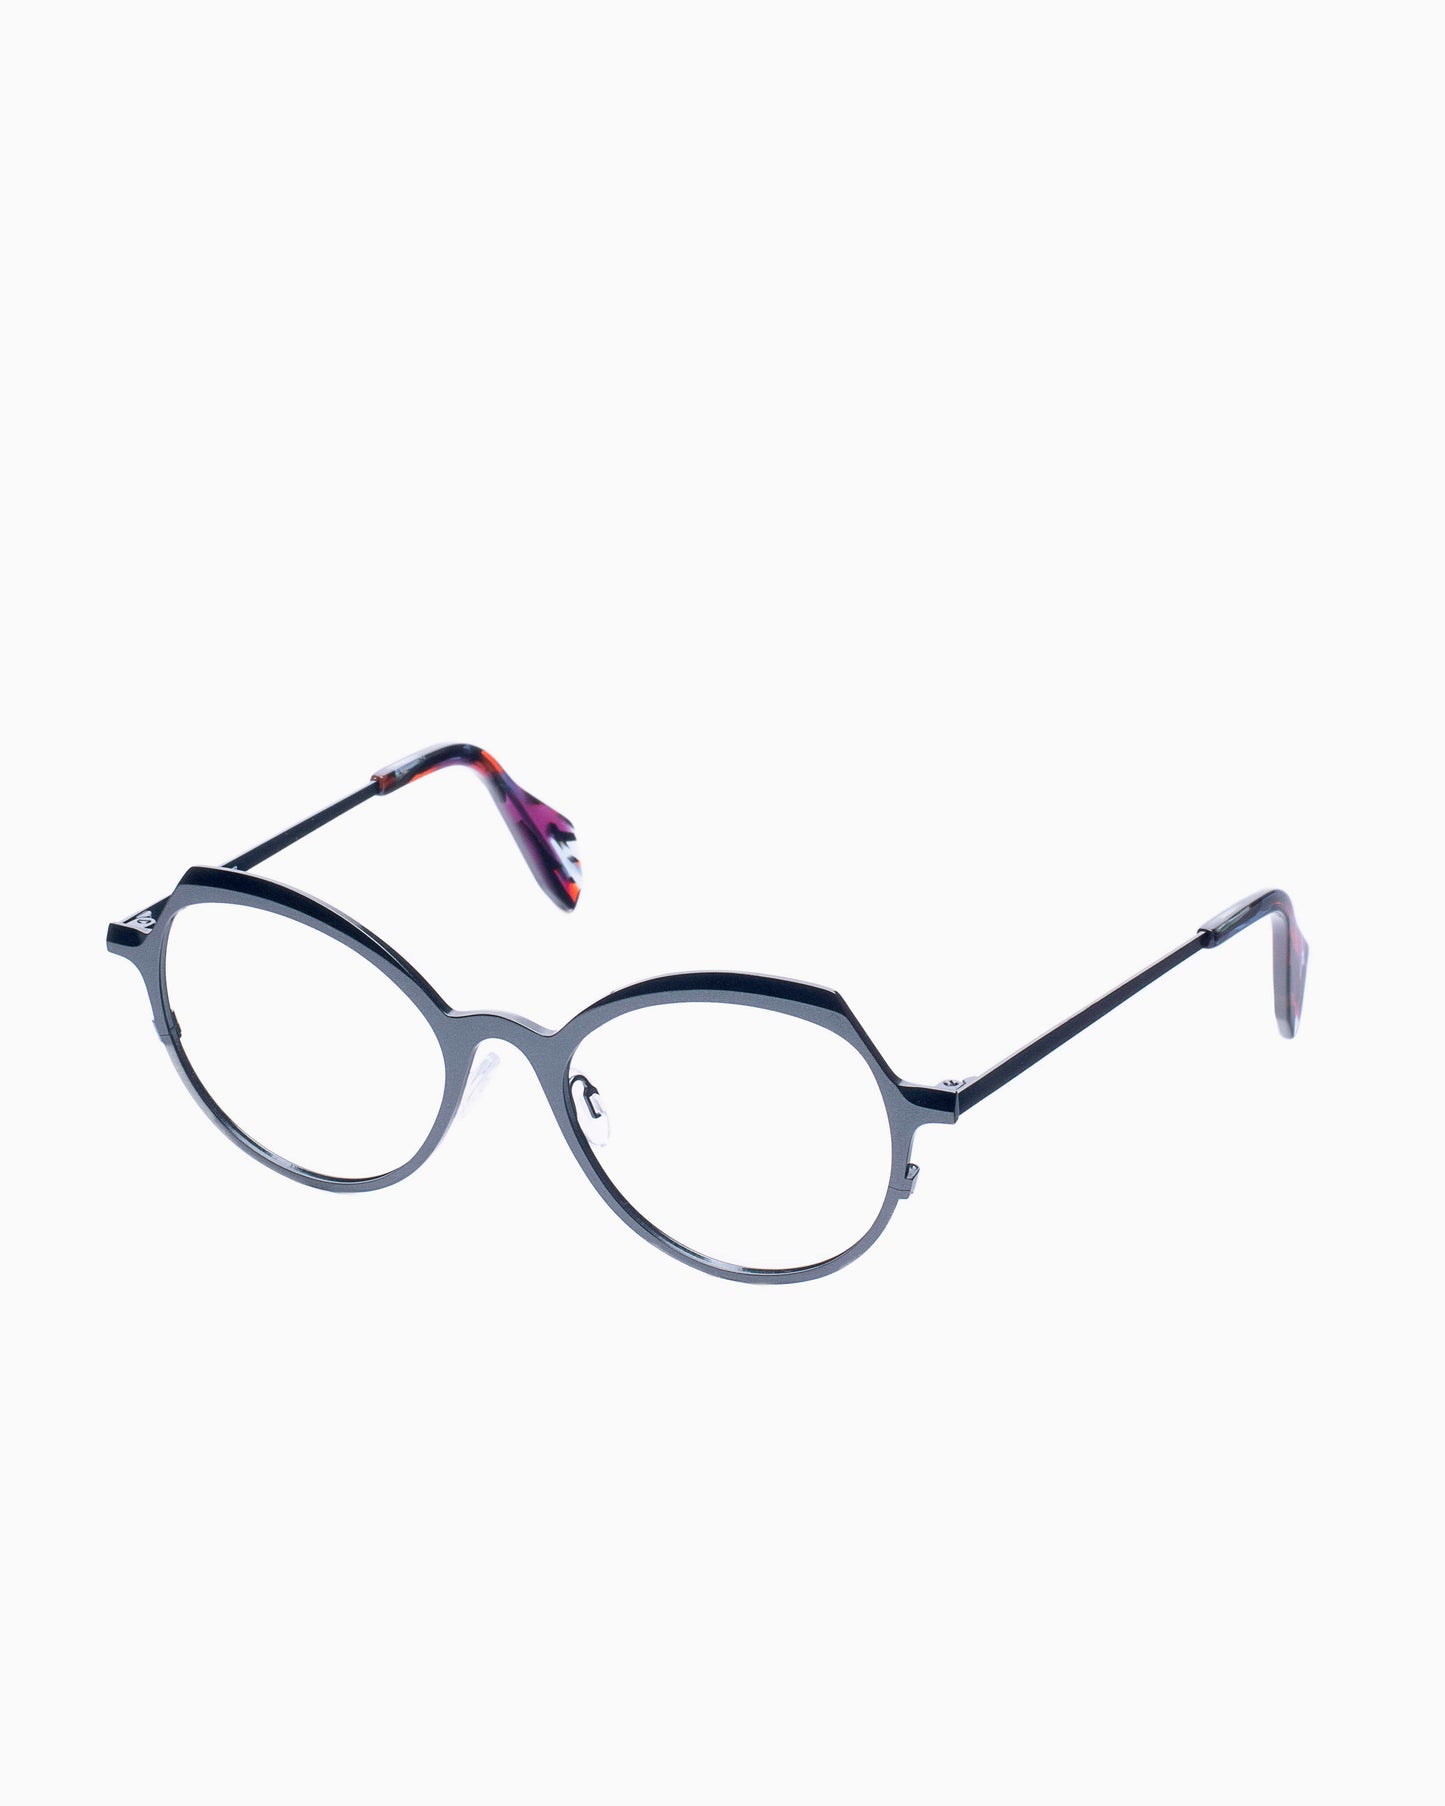 Theo - Pendeloque - 501 | Bar à lunettes